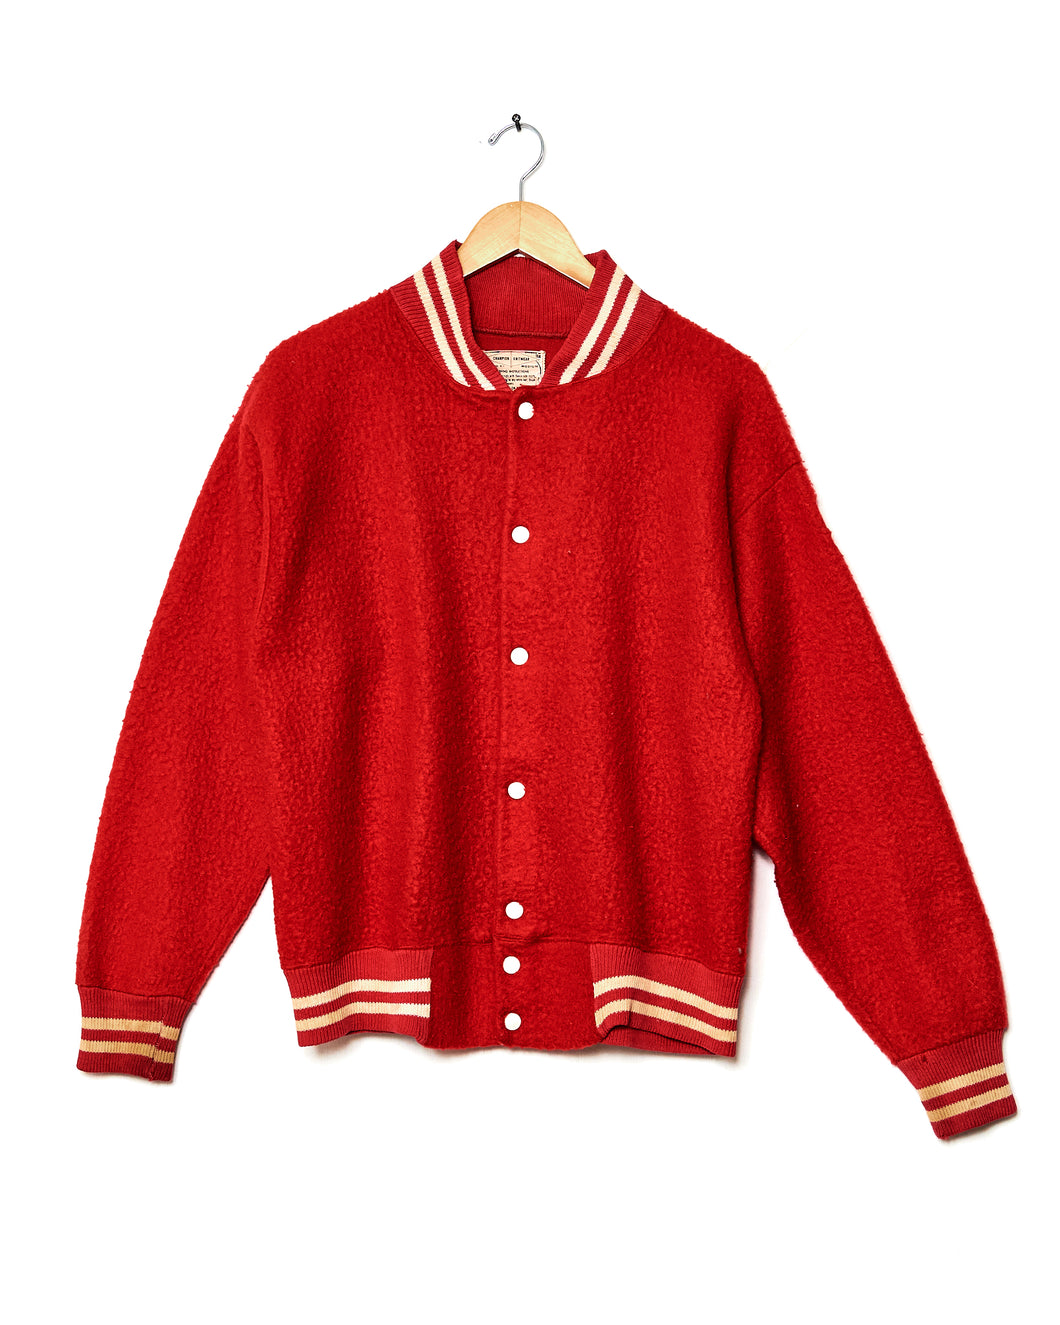 1950s/60s Champion Knitwear Jacket